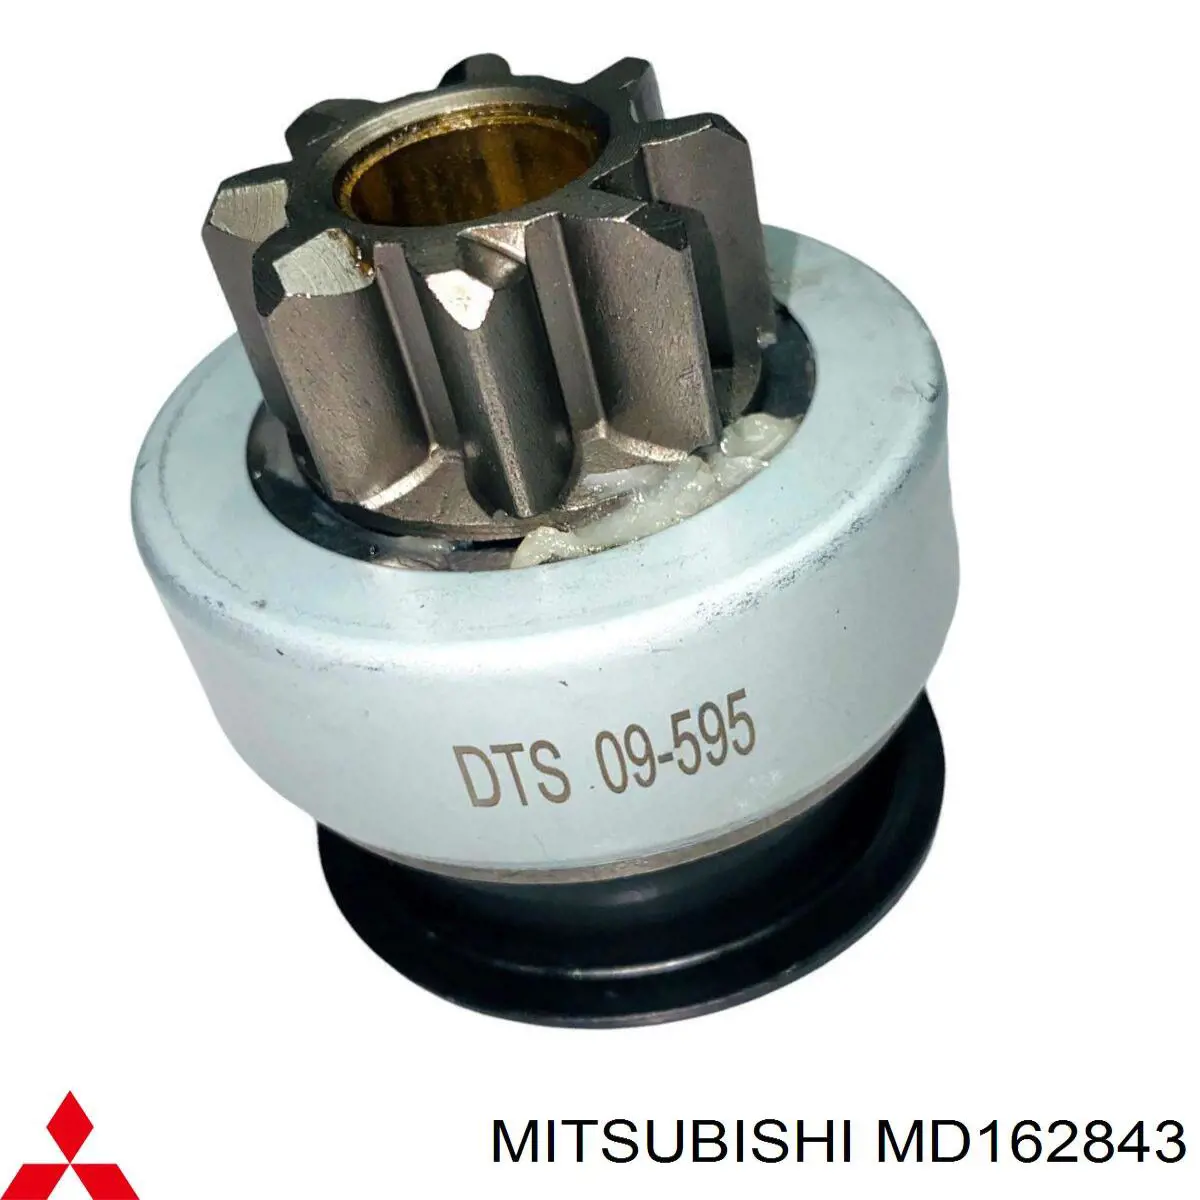 MD162843 Mitsubishi motor de arranque